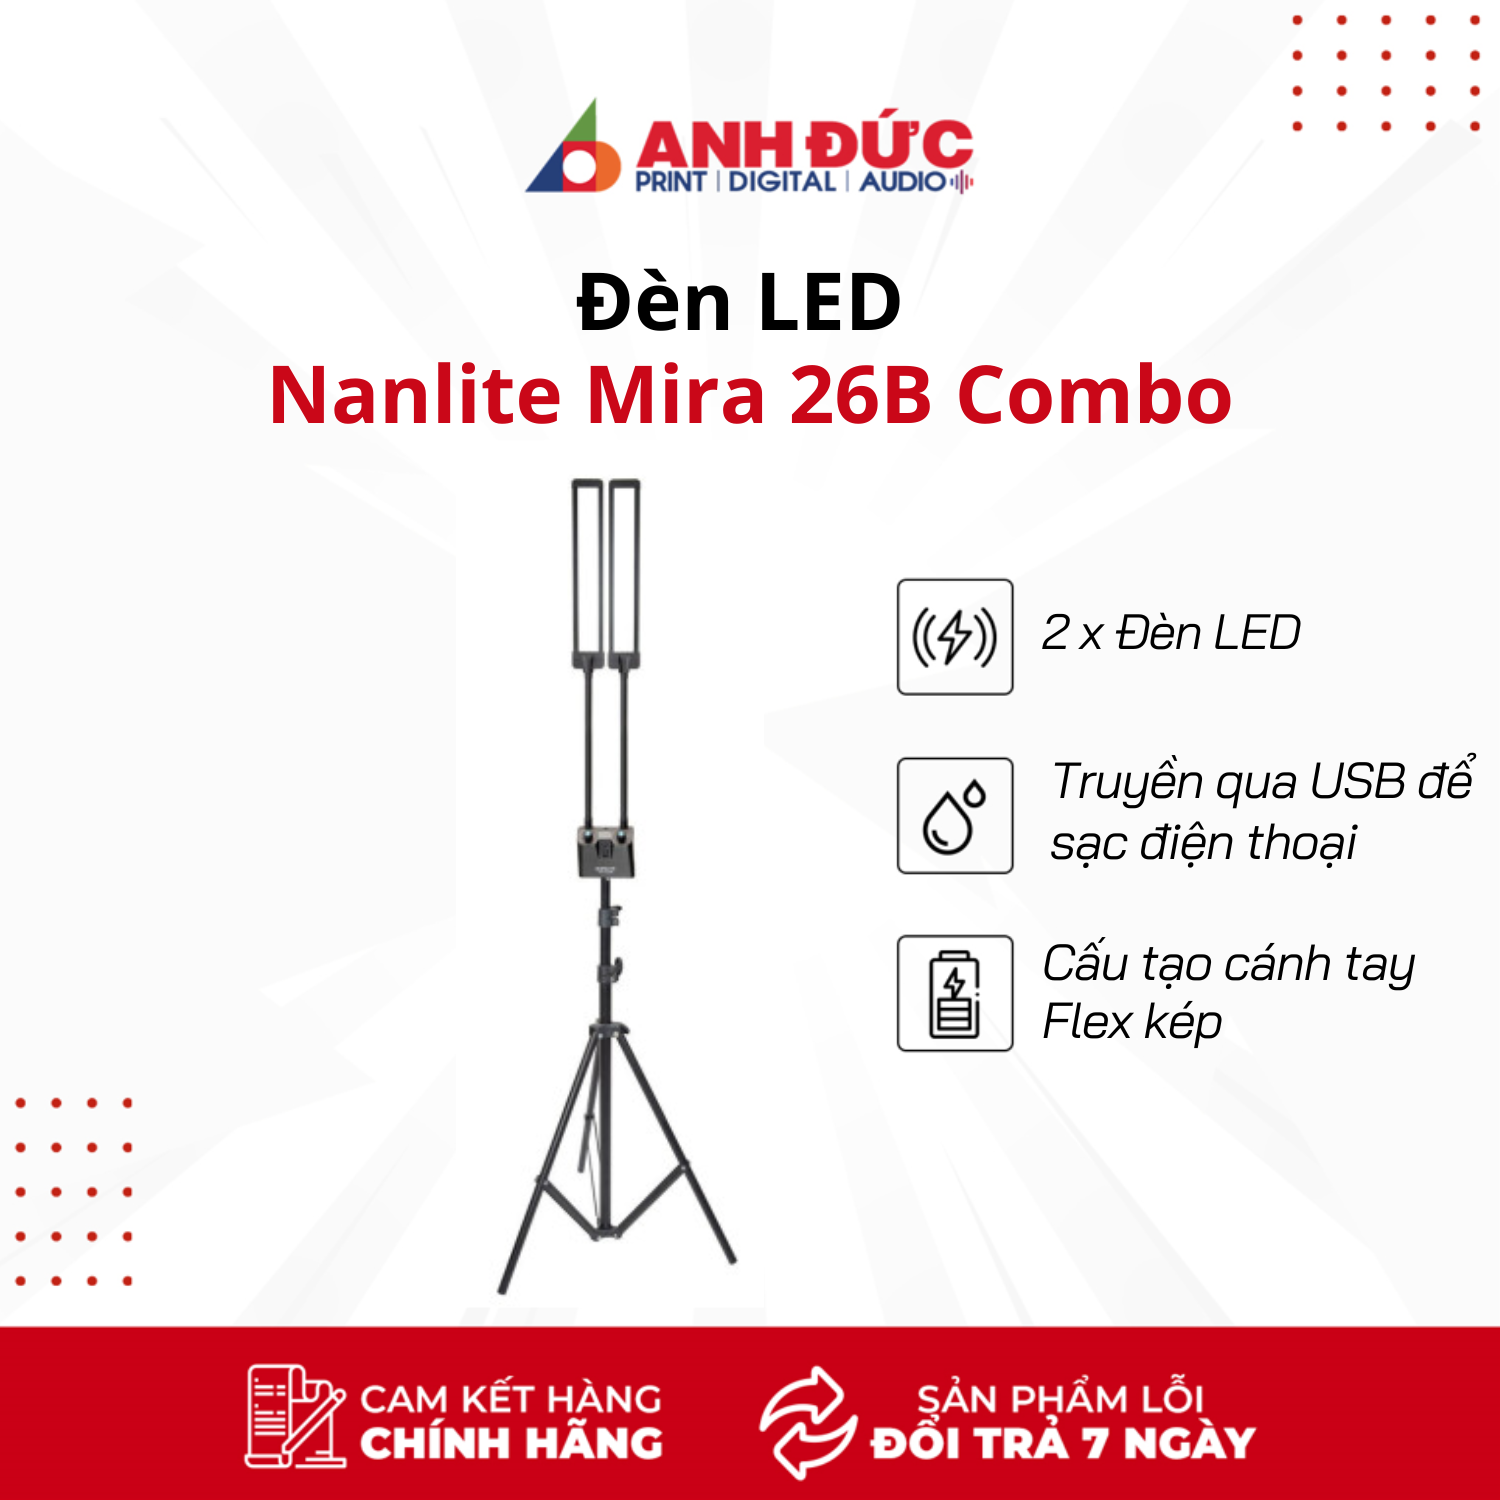 Đèn LED Nanlite Mira 26B Combo - Hàng chính hãng